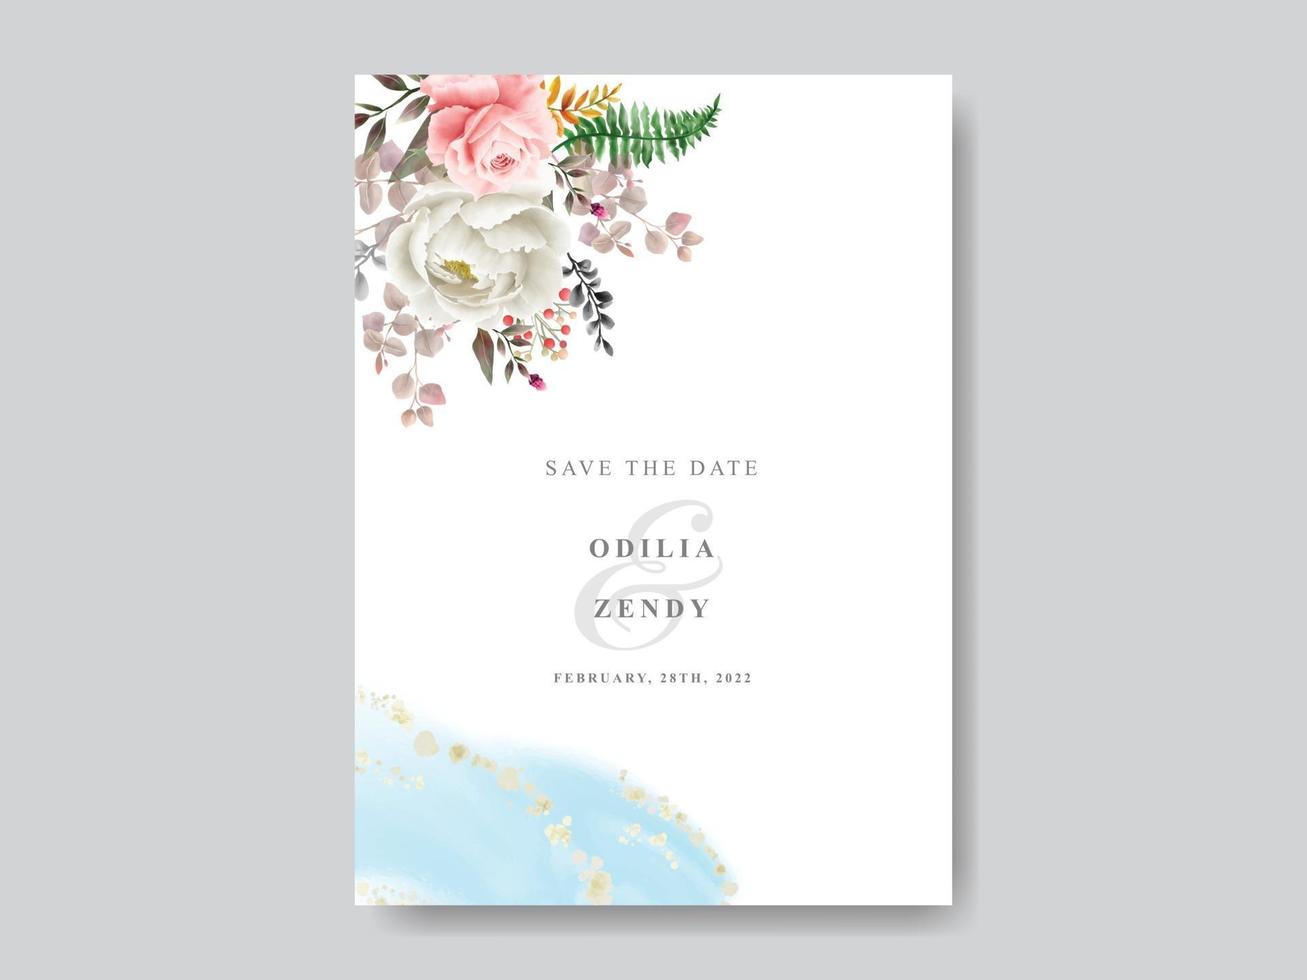 tarjeta de invitación de boda floral romántica vector